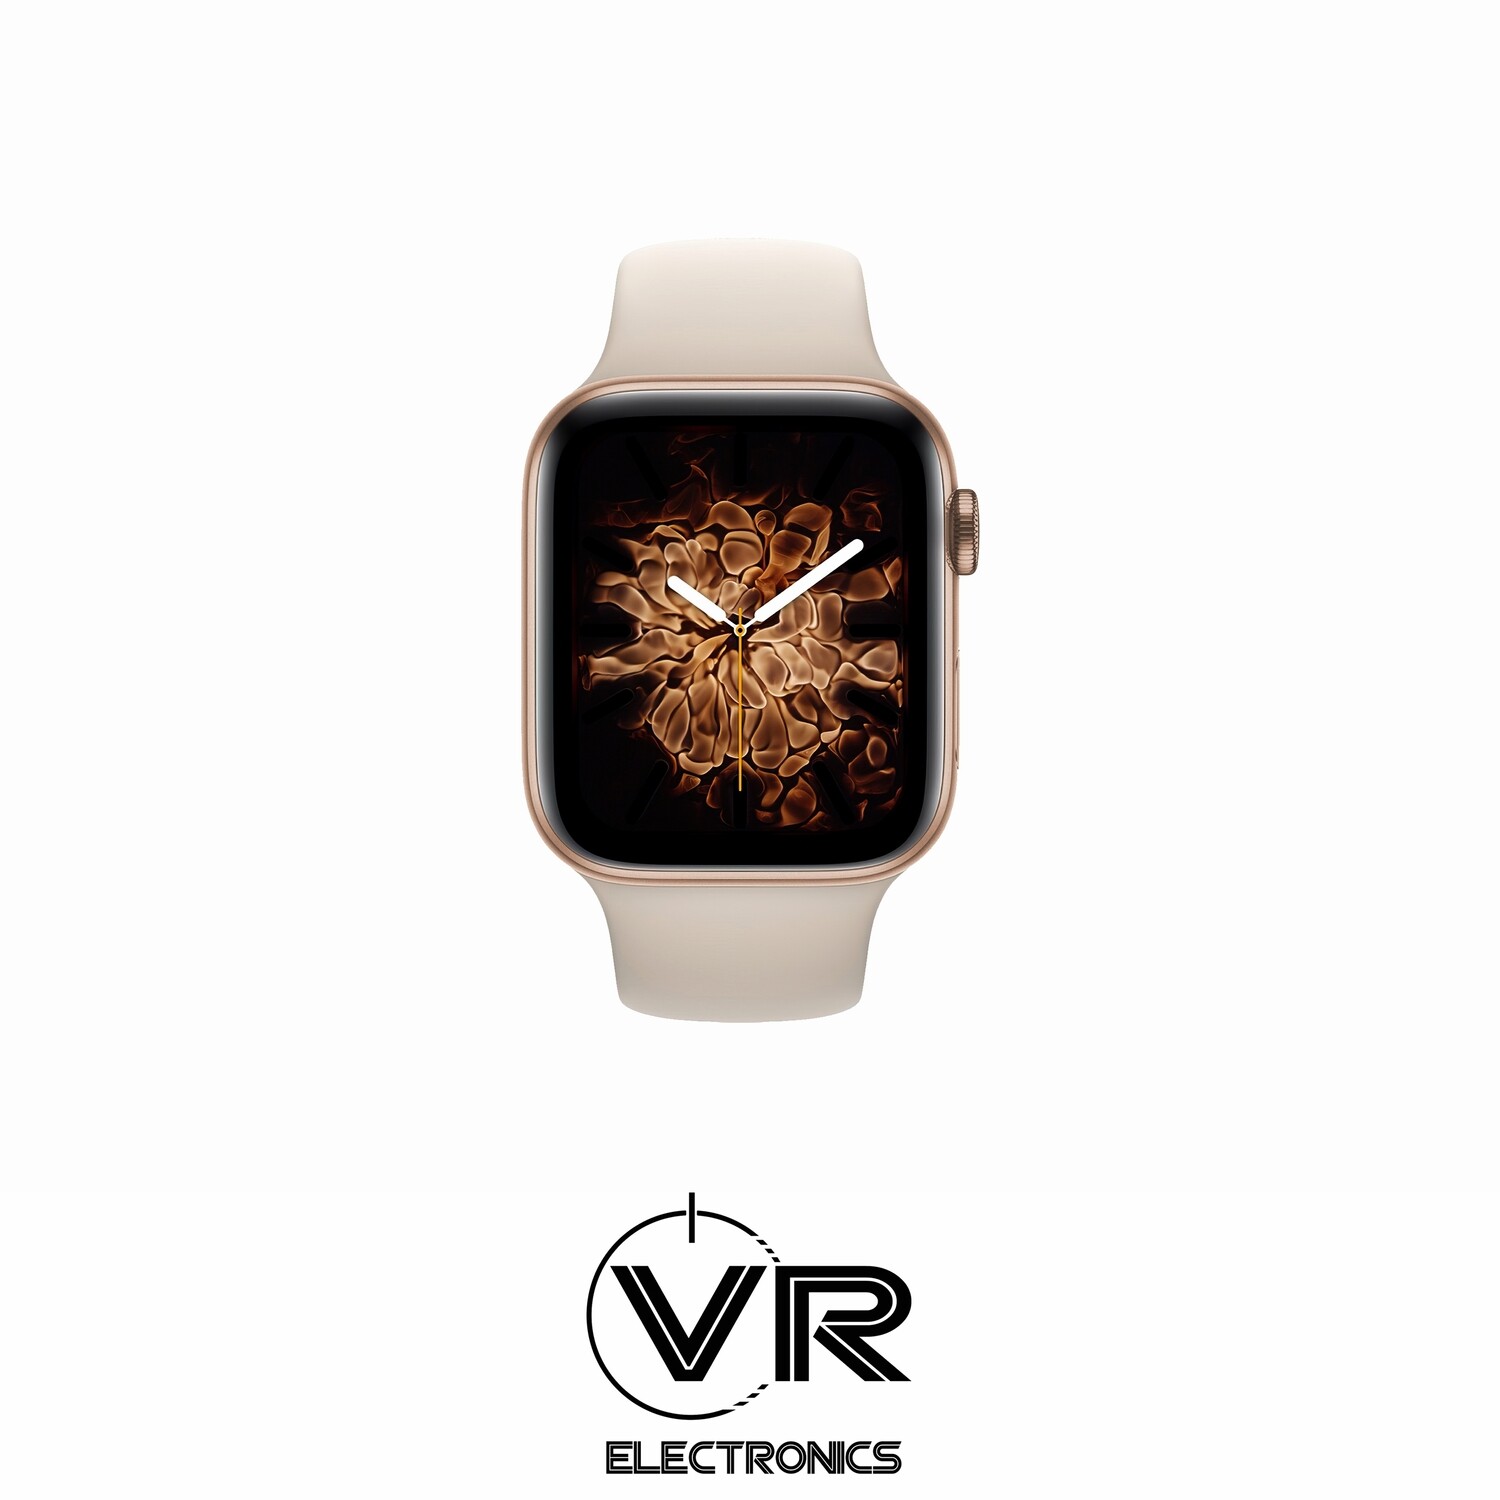 Apple Watch Series 4 Ricondizionato